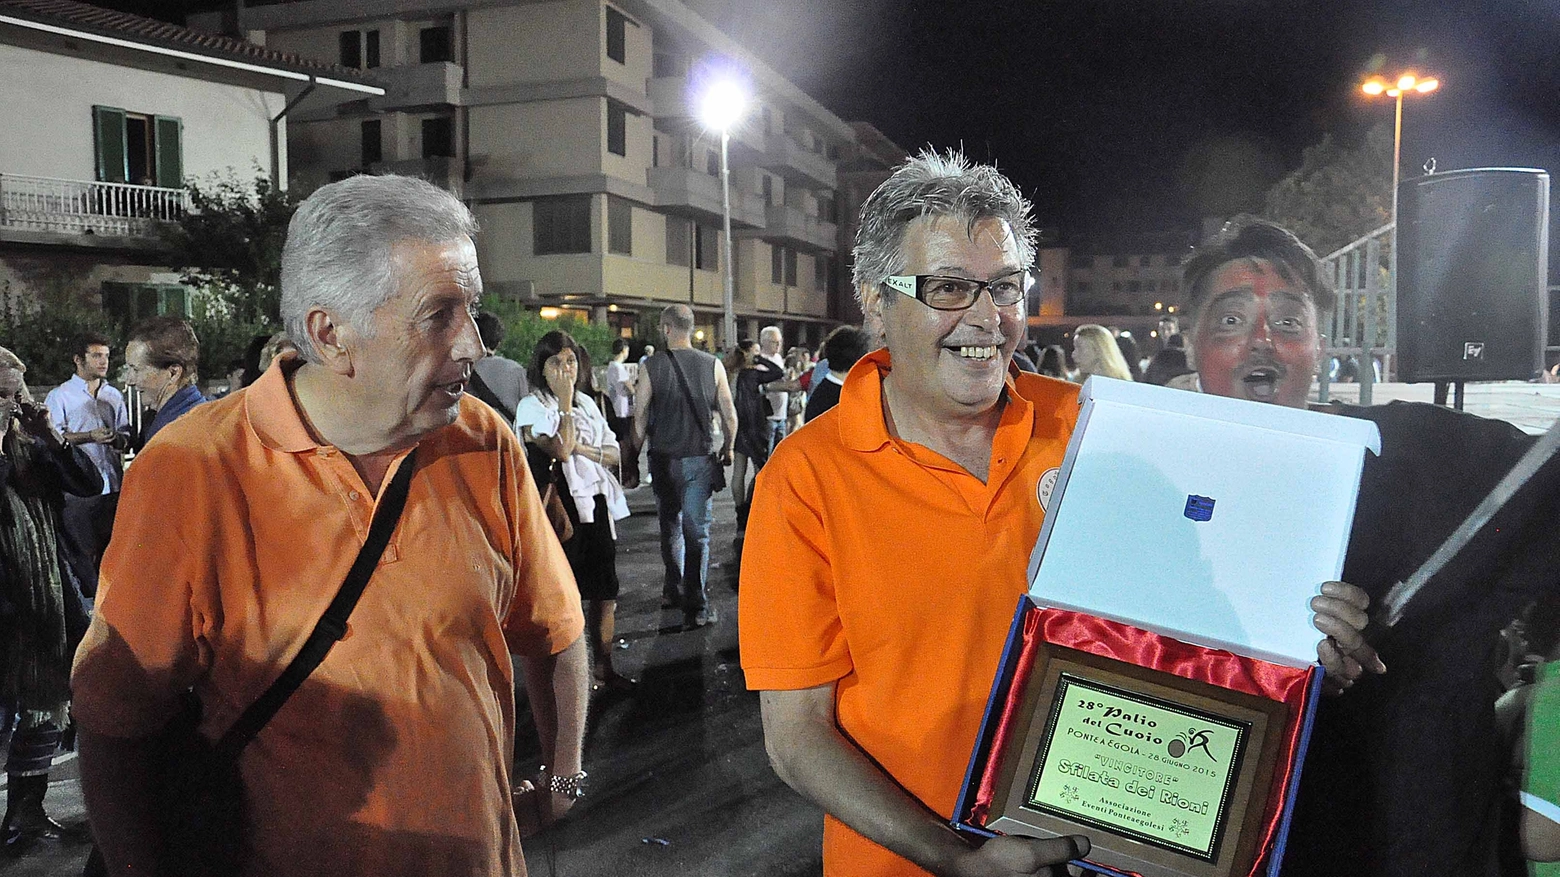 Tognarino riceve il premio per la migliore sfilata (foto Germogli)